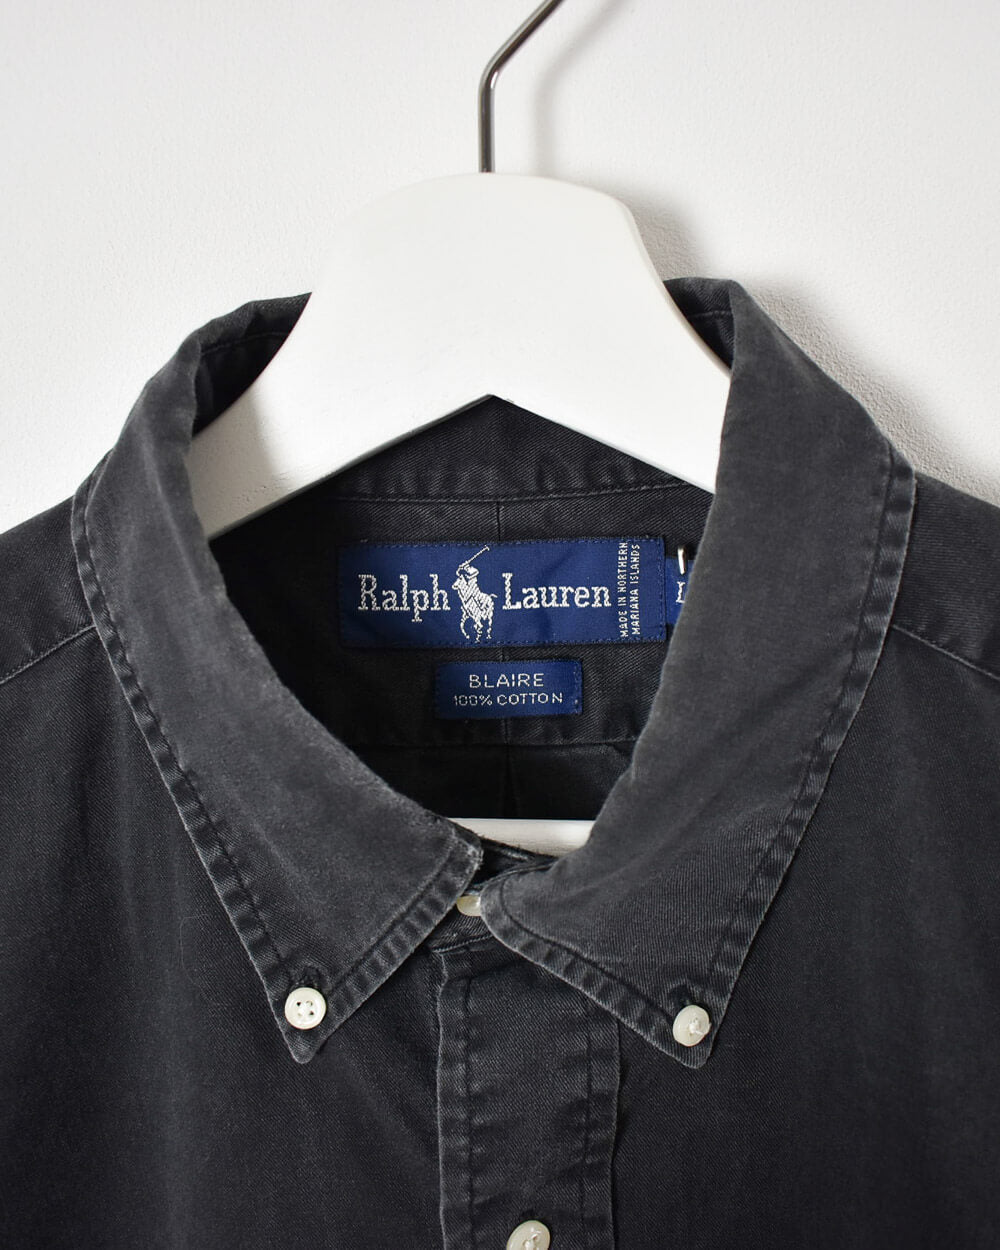 Black Ralph Lauren Blaire Shirt - X-Large